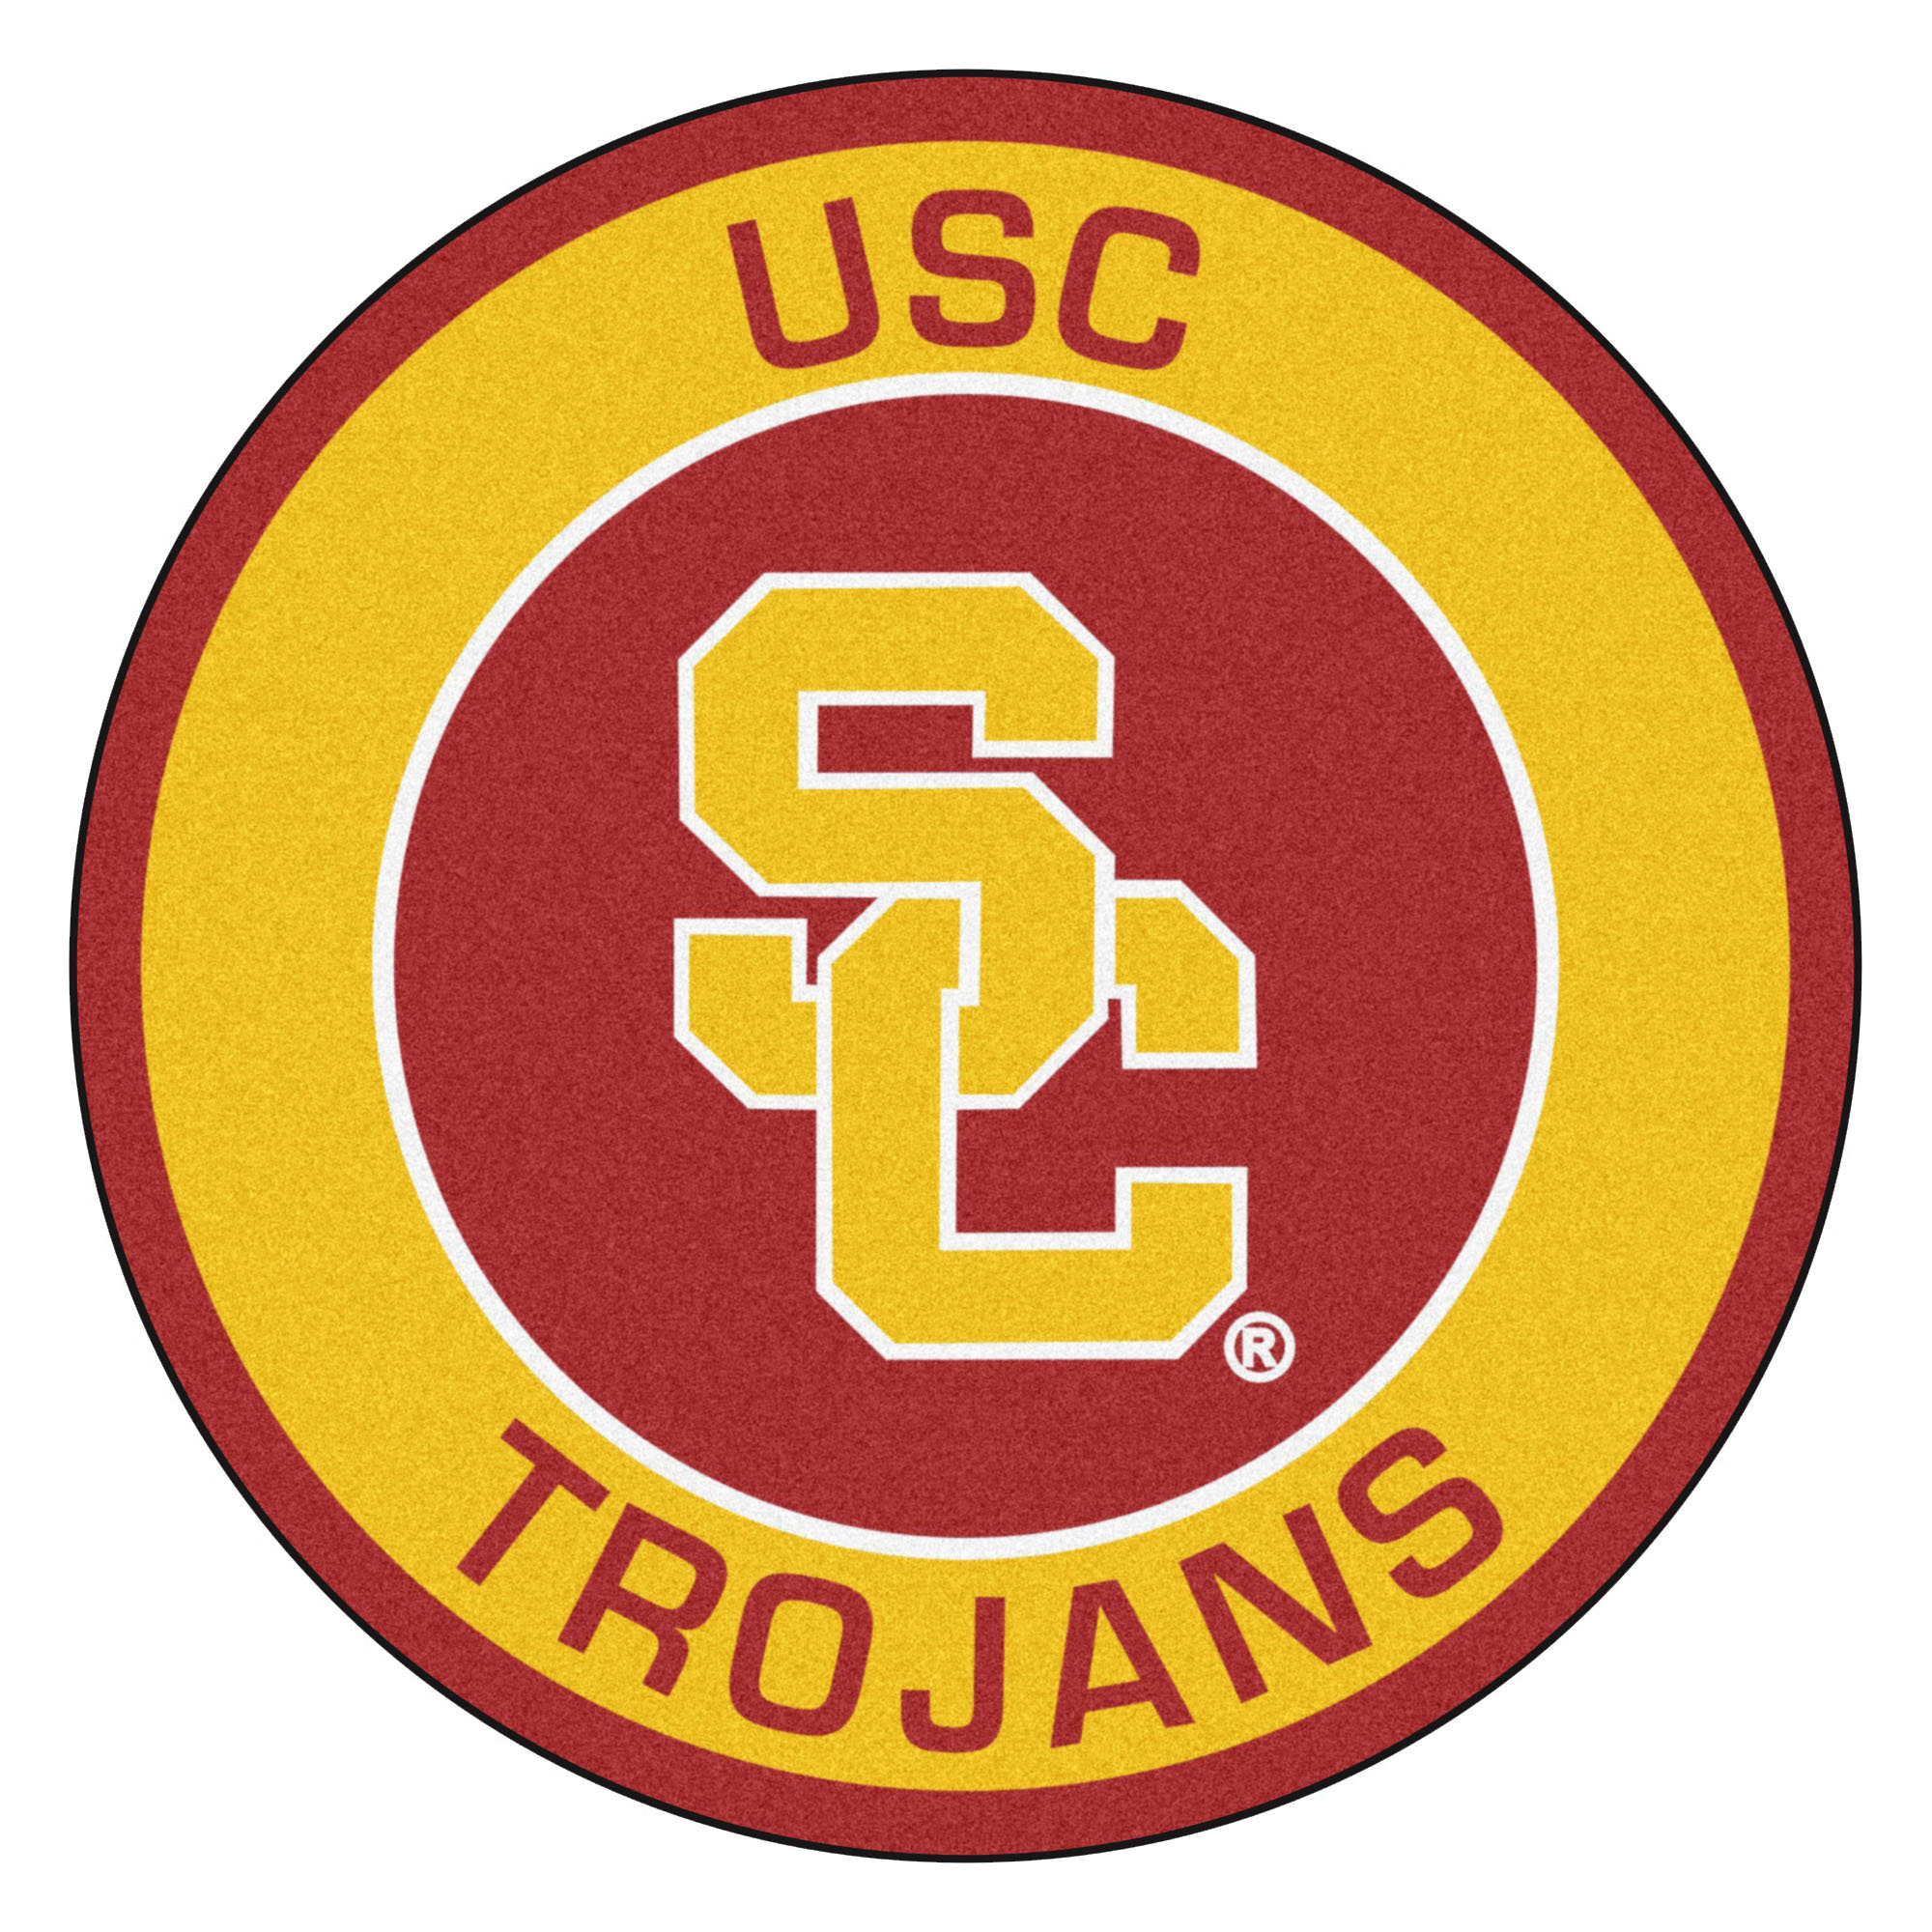 27 round. USC Trojans. USC logo. USC Trojans logo. USC 2.